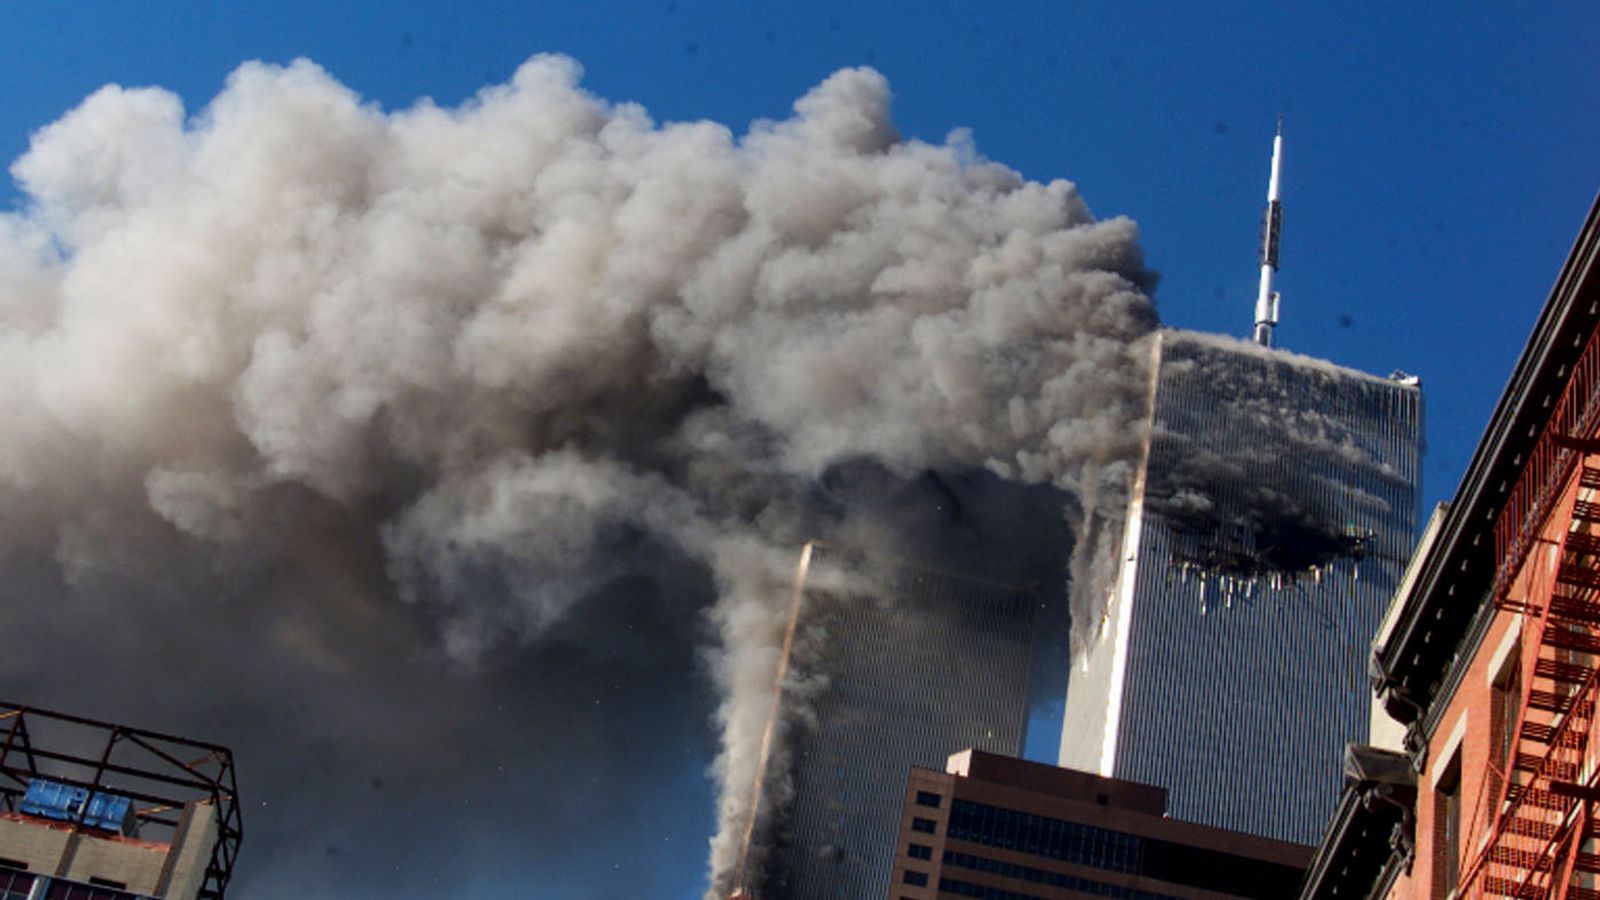 Нападение башен. Аль Каида 11 сентября 2001. 11 Сентября 2001 года террористическая атака на США. Аль Каида башни Близнецы.